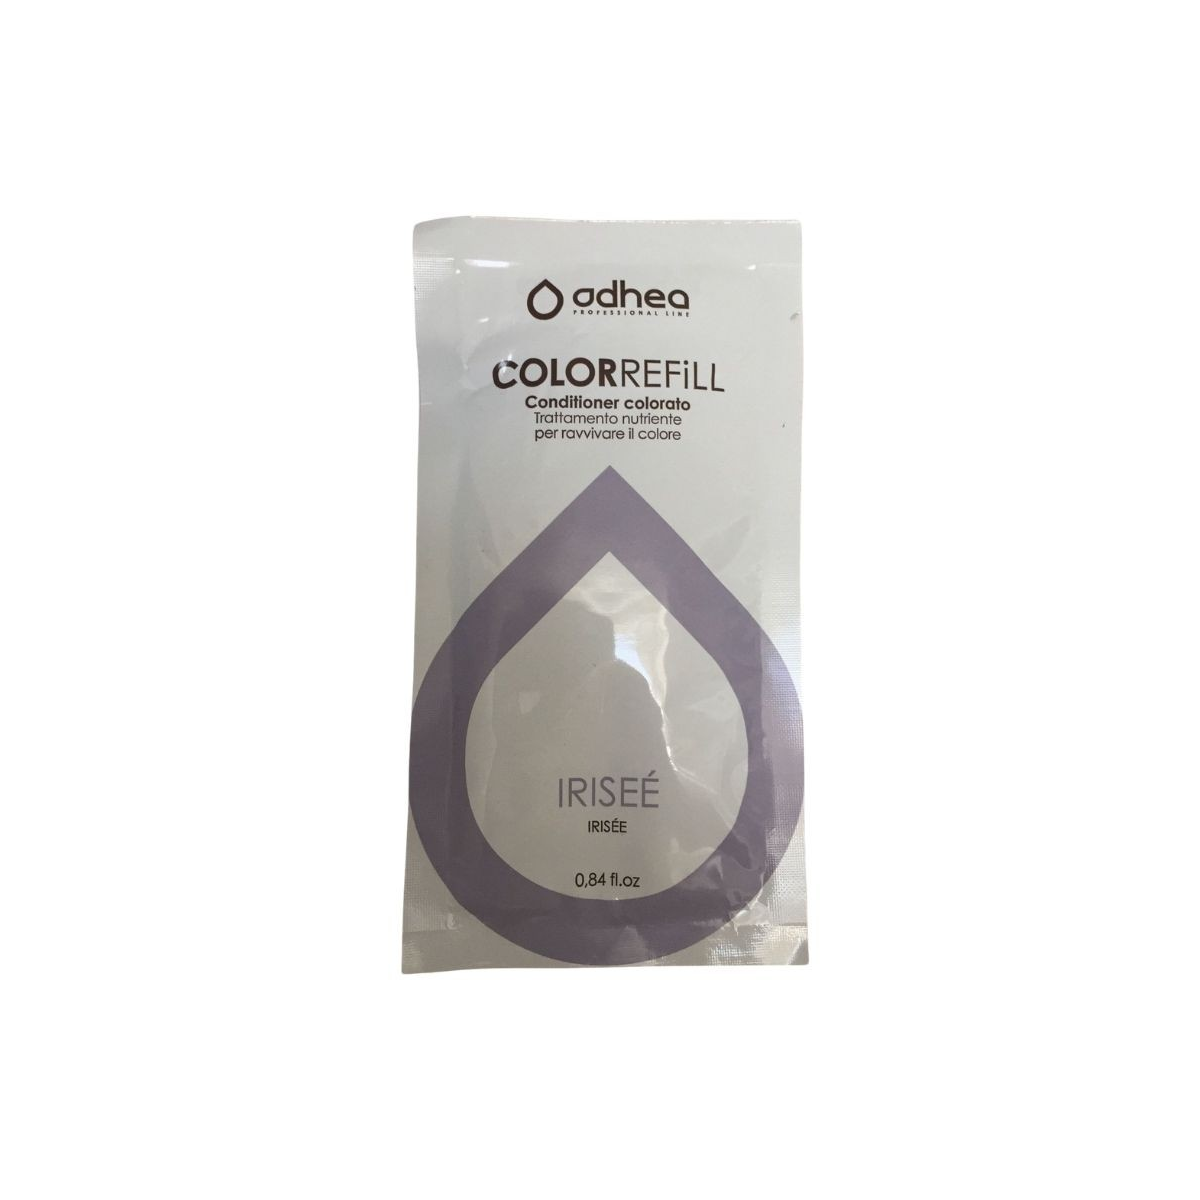 ODHEA - COLOR REFILL IRISEE' (25ml) Conditioner colorato